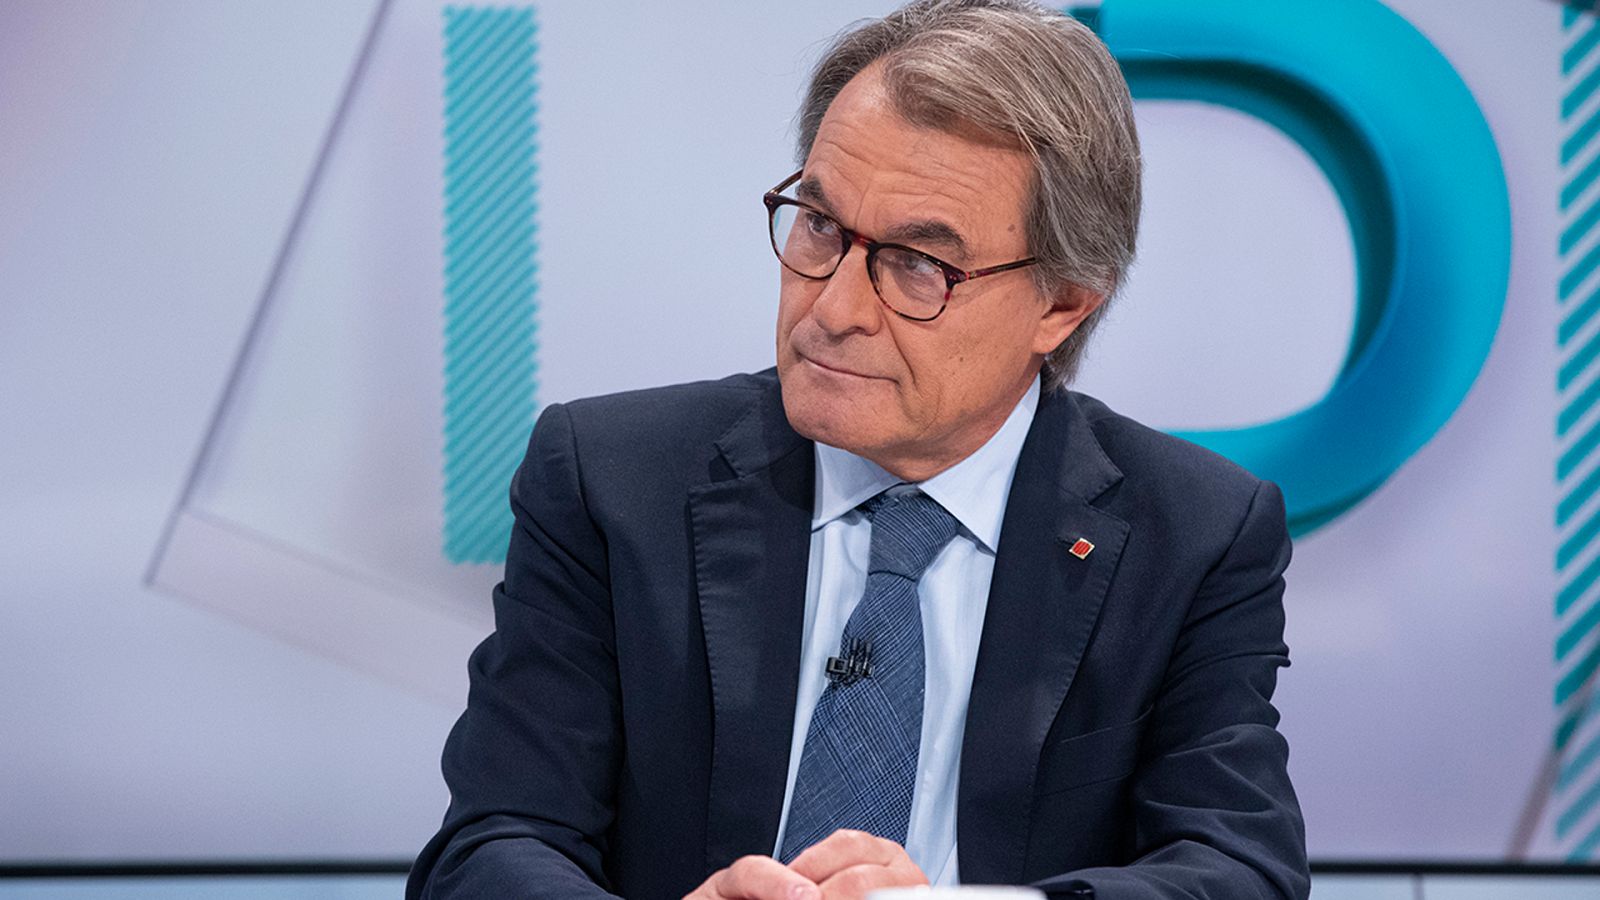 Los Desayunos TVE: ¿Artur Mas, candidato a la Generalitat?: "Personalmente" no, pero no lo descarta "por responsabilidad"